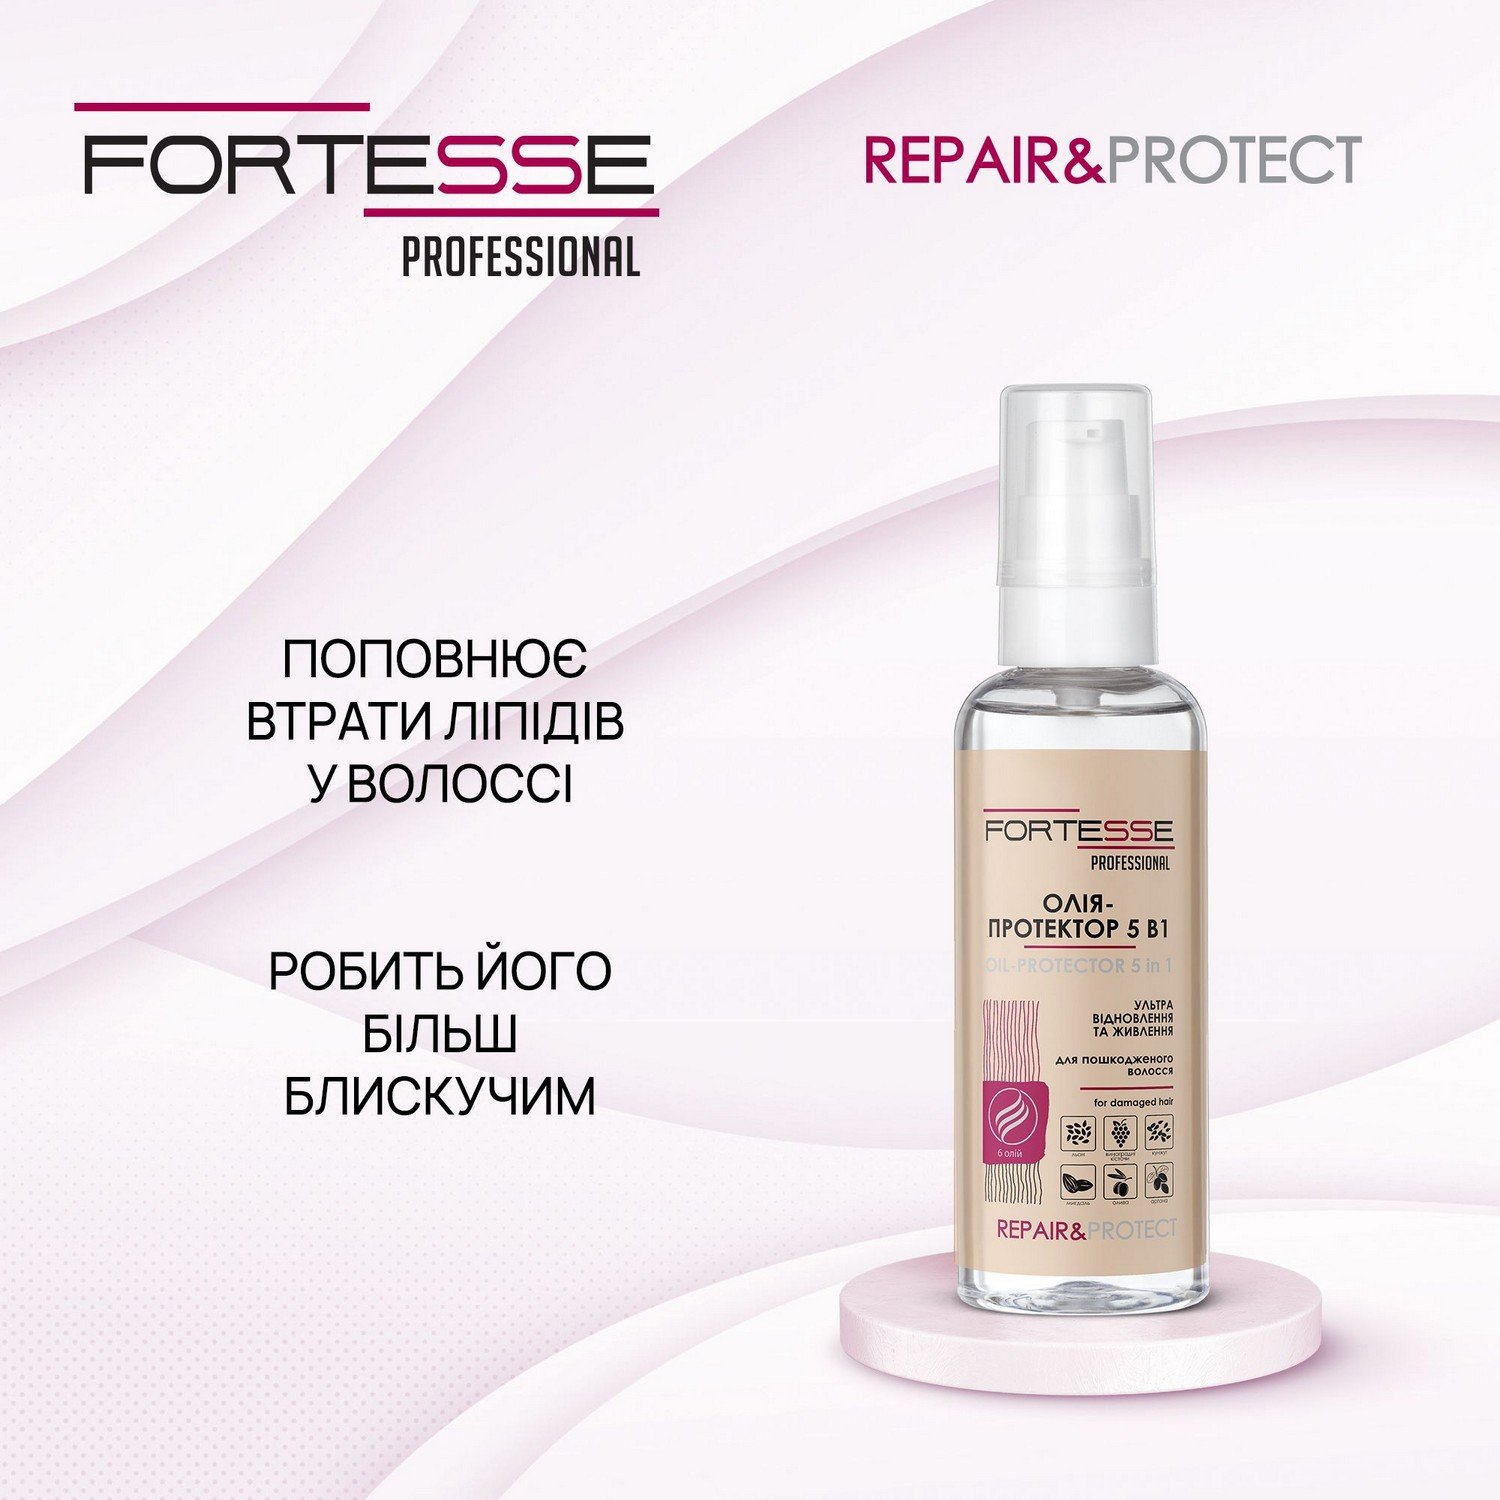 Олія-протектор 5 в 1 Fortesse Professional Repair&Protect Ультравідновлення та живлення, для пошкодженого волосся, 60 мл - фото 5